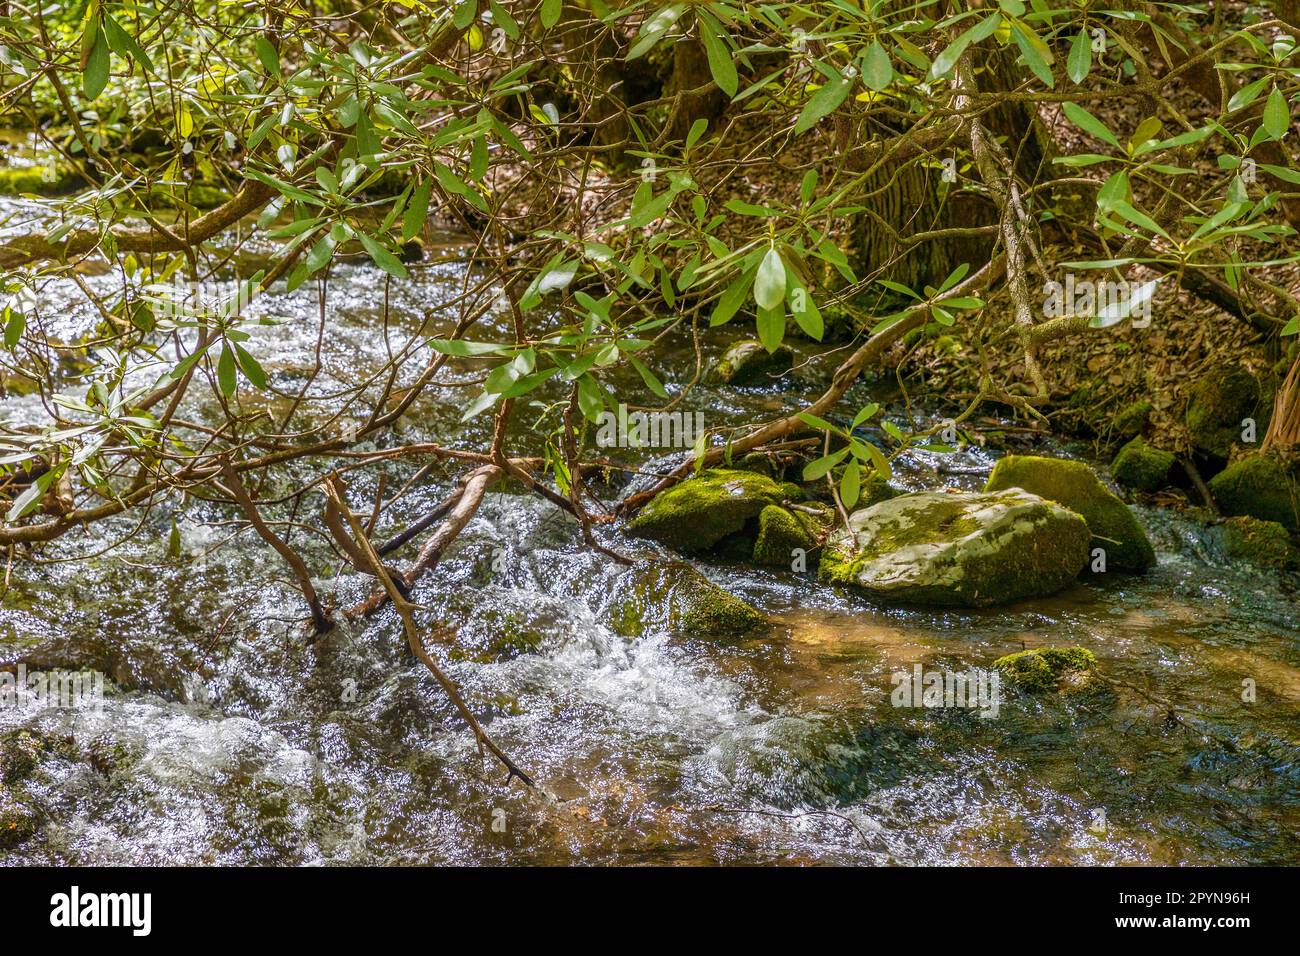 Nahaufnahme eines kleinen Bachs mit einem wilden Rhododendron-Zweig, der von der Bank in den Great Smoky Mountains abhängt. Stockfoto